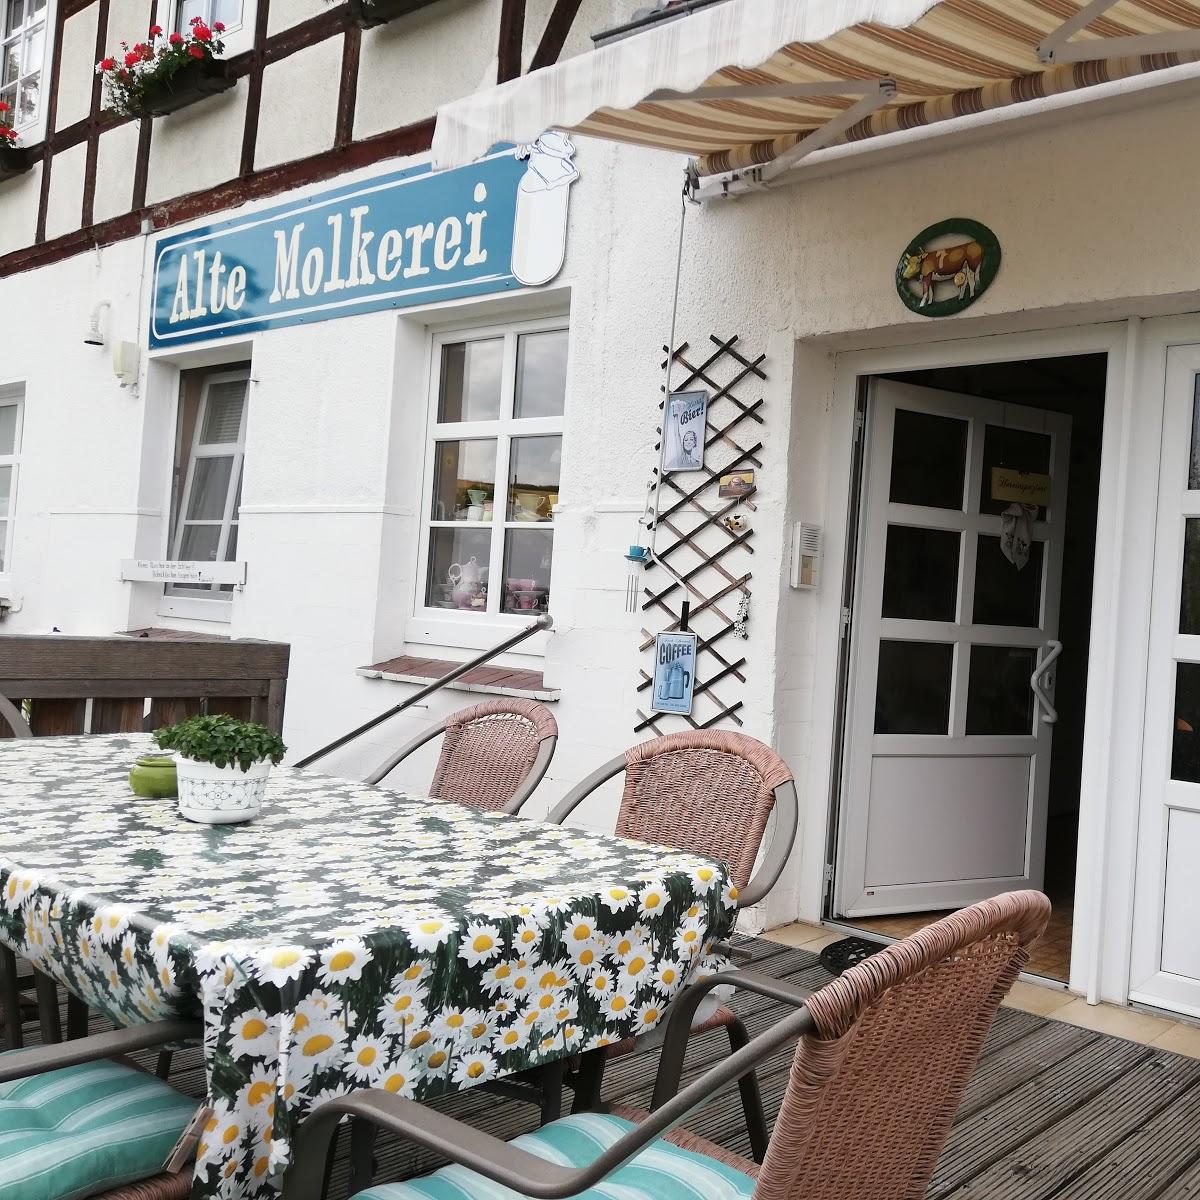 Restaurant "Alte Molkerei Schlierbach" in Neuental